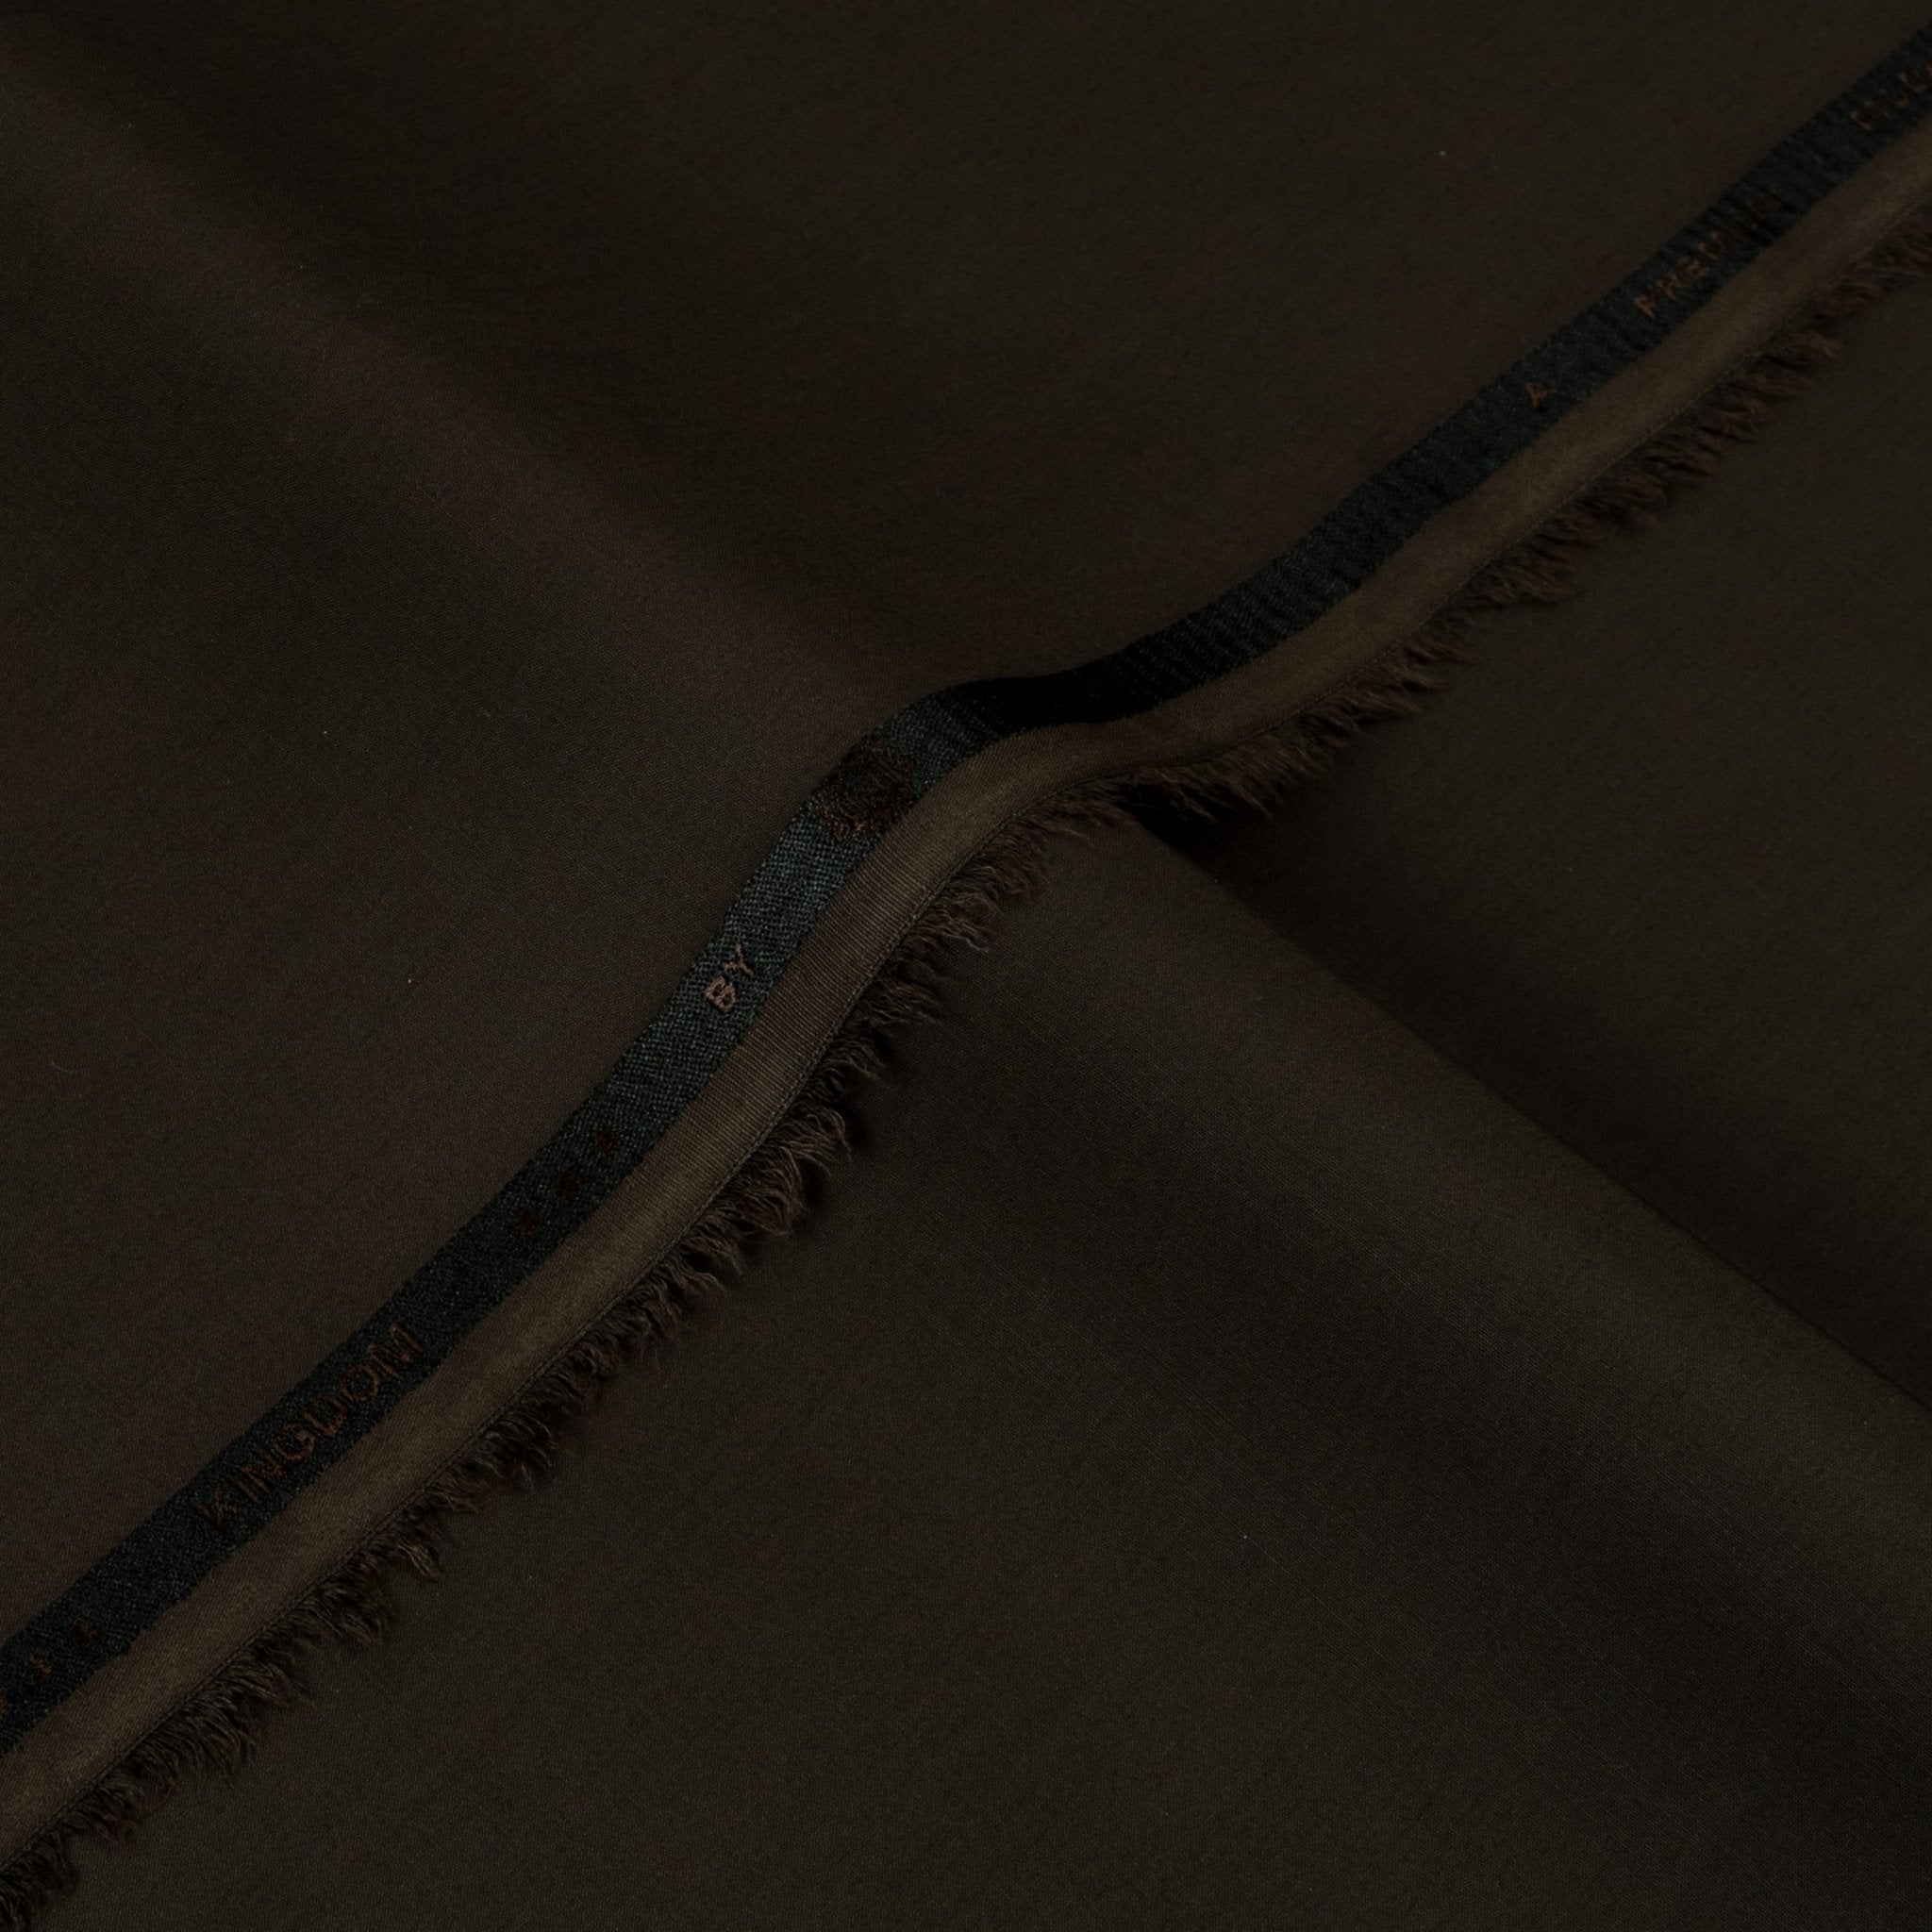 Kingdom - Summer Blended (4.5 Mtr) - Narkin's Textile Industries